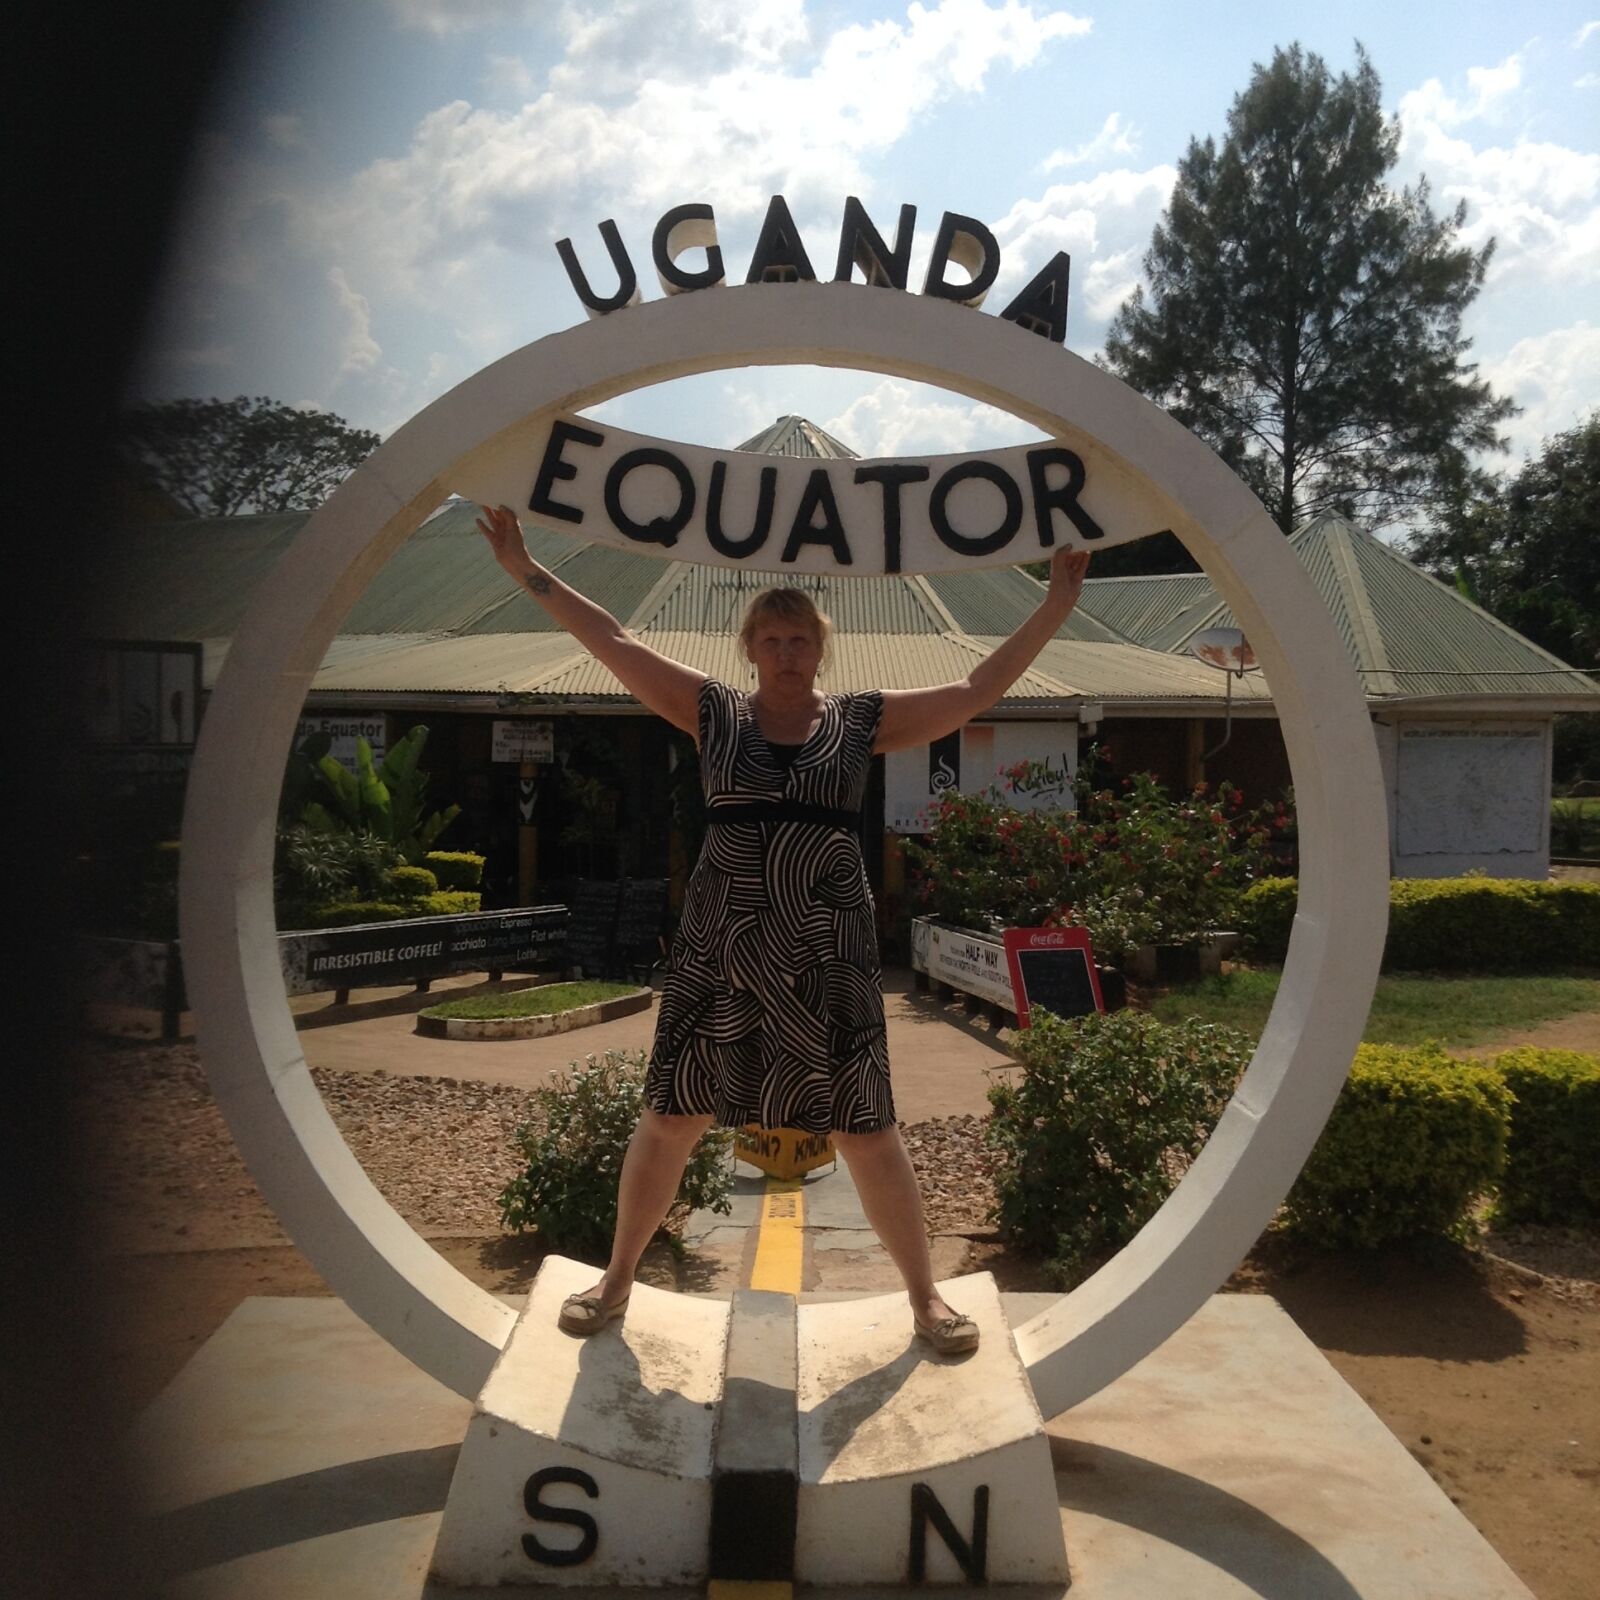 Apple iPad mini + iPad mini back camera 3.3mm f/2.4 sample photo. The, equator, uganda photography